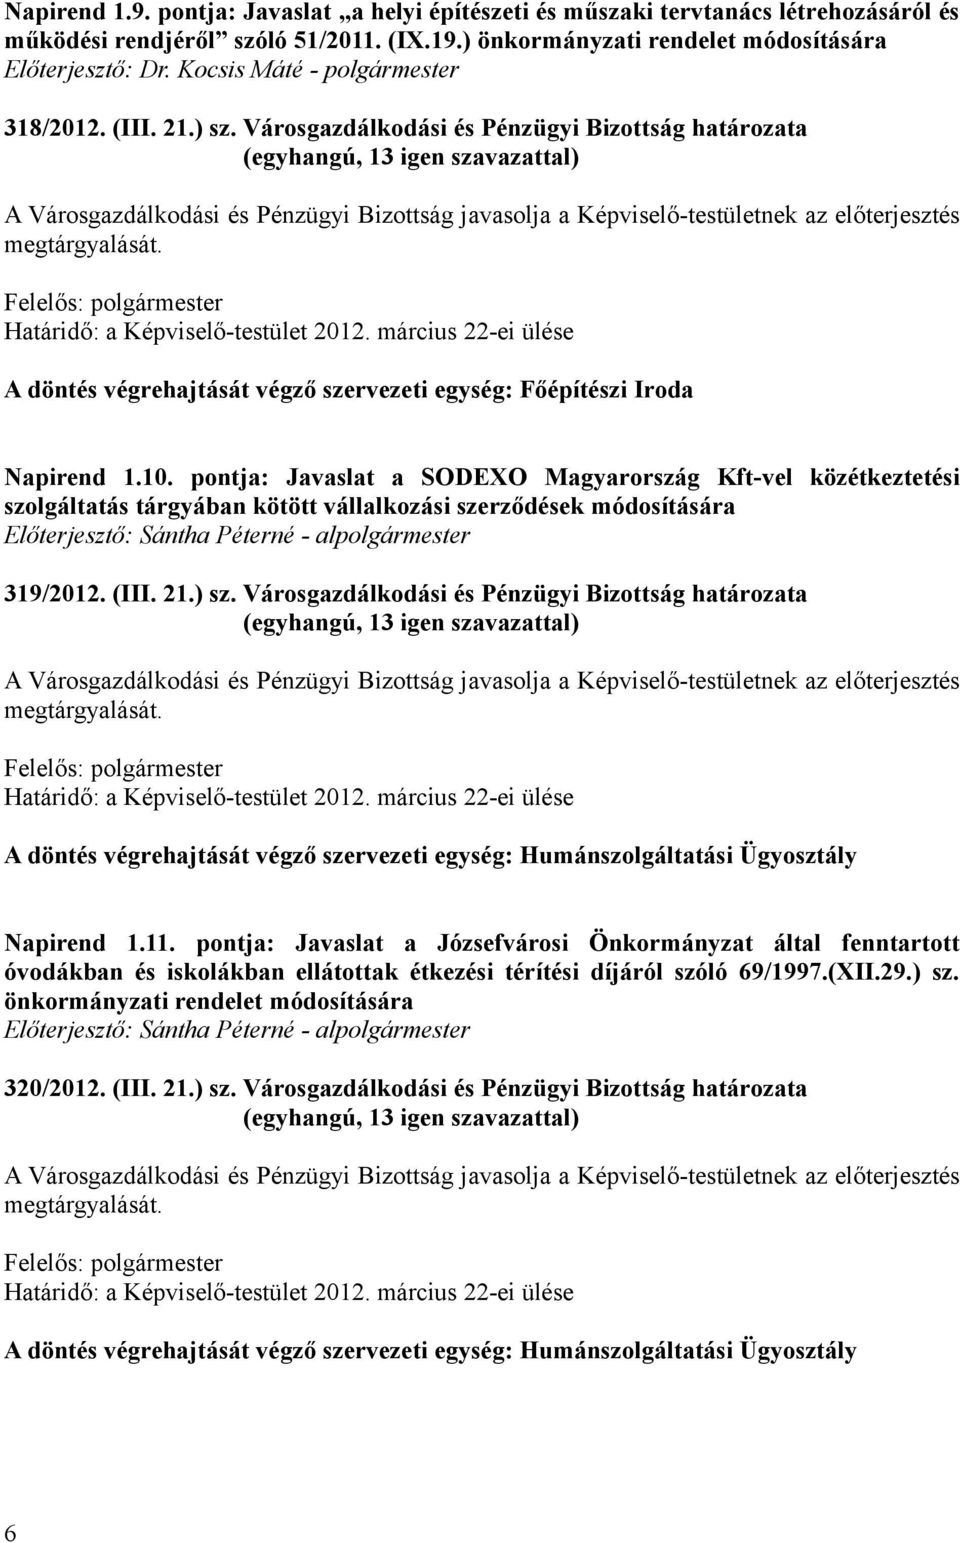 pontja: Javaslat a SODEXO Magyarország Kft-vel közétkeztetési szolgáltatás tárgyában kötött vállalkozási szerződések módosítására 319/2012. (III. 21.) sz.